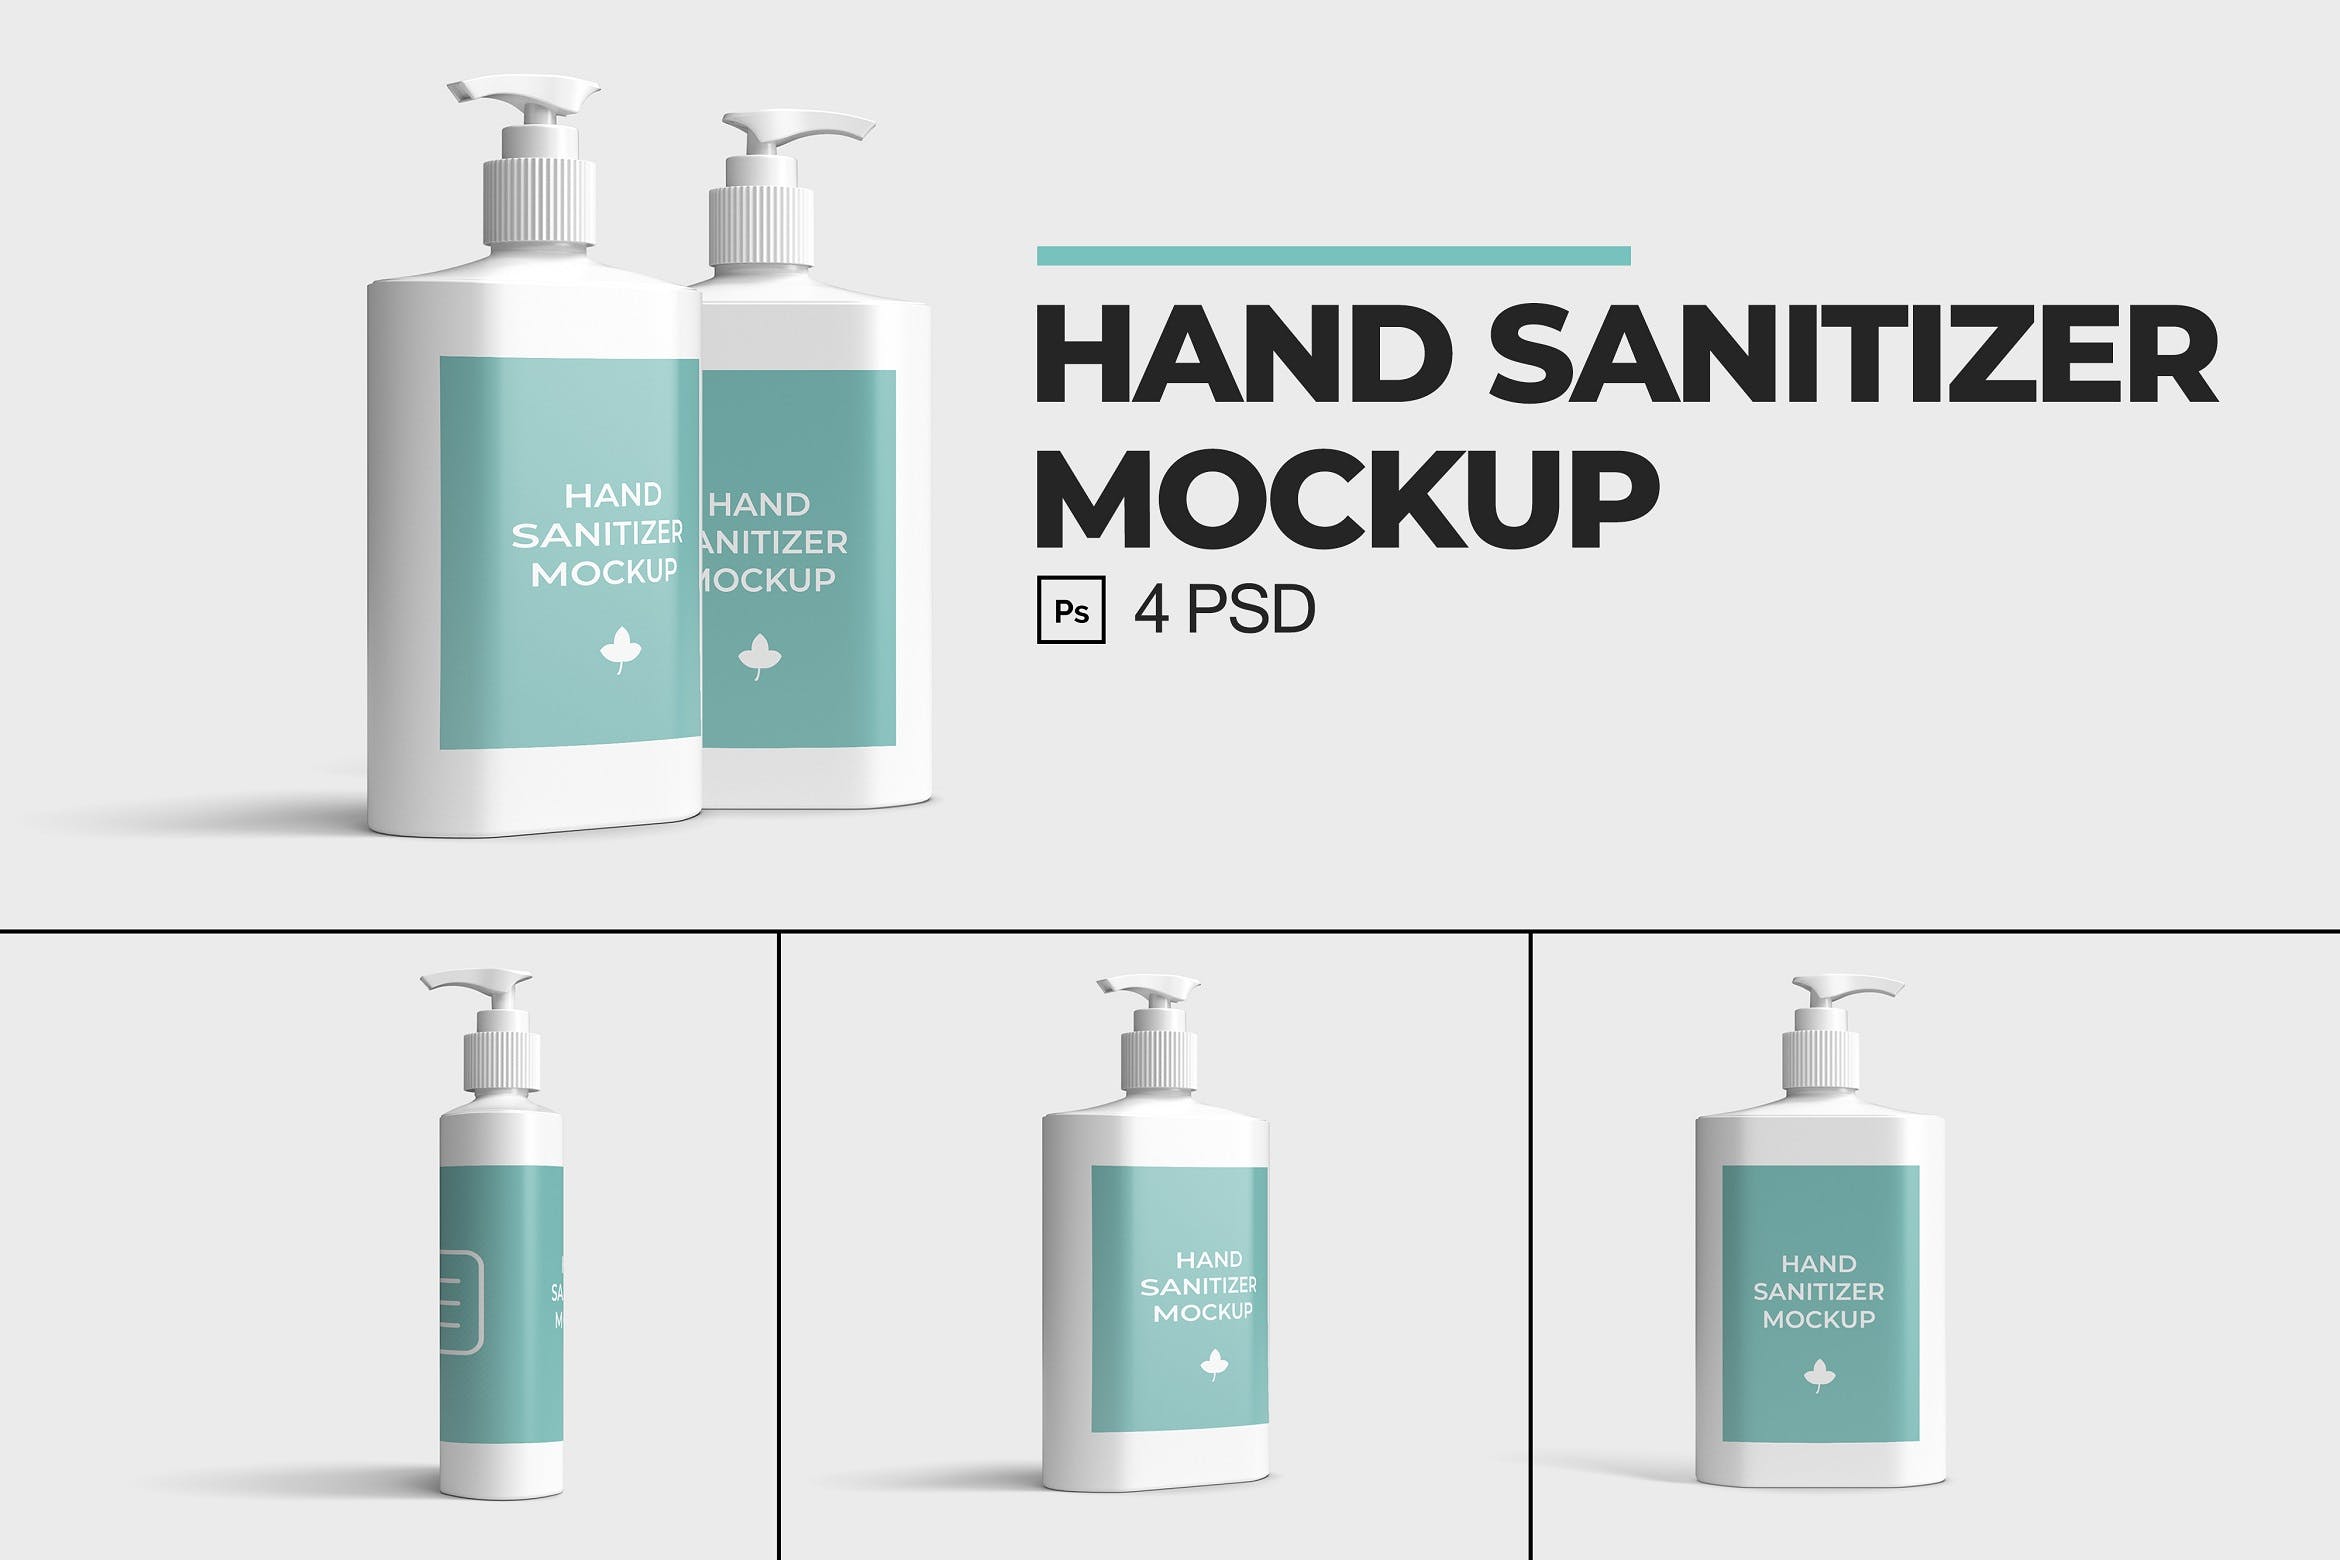 挤压式洗手液塑料瓶外包装品牌样机V.1 Hand Sanitizer Mockup V.1设计素材模板